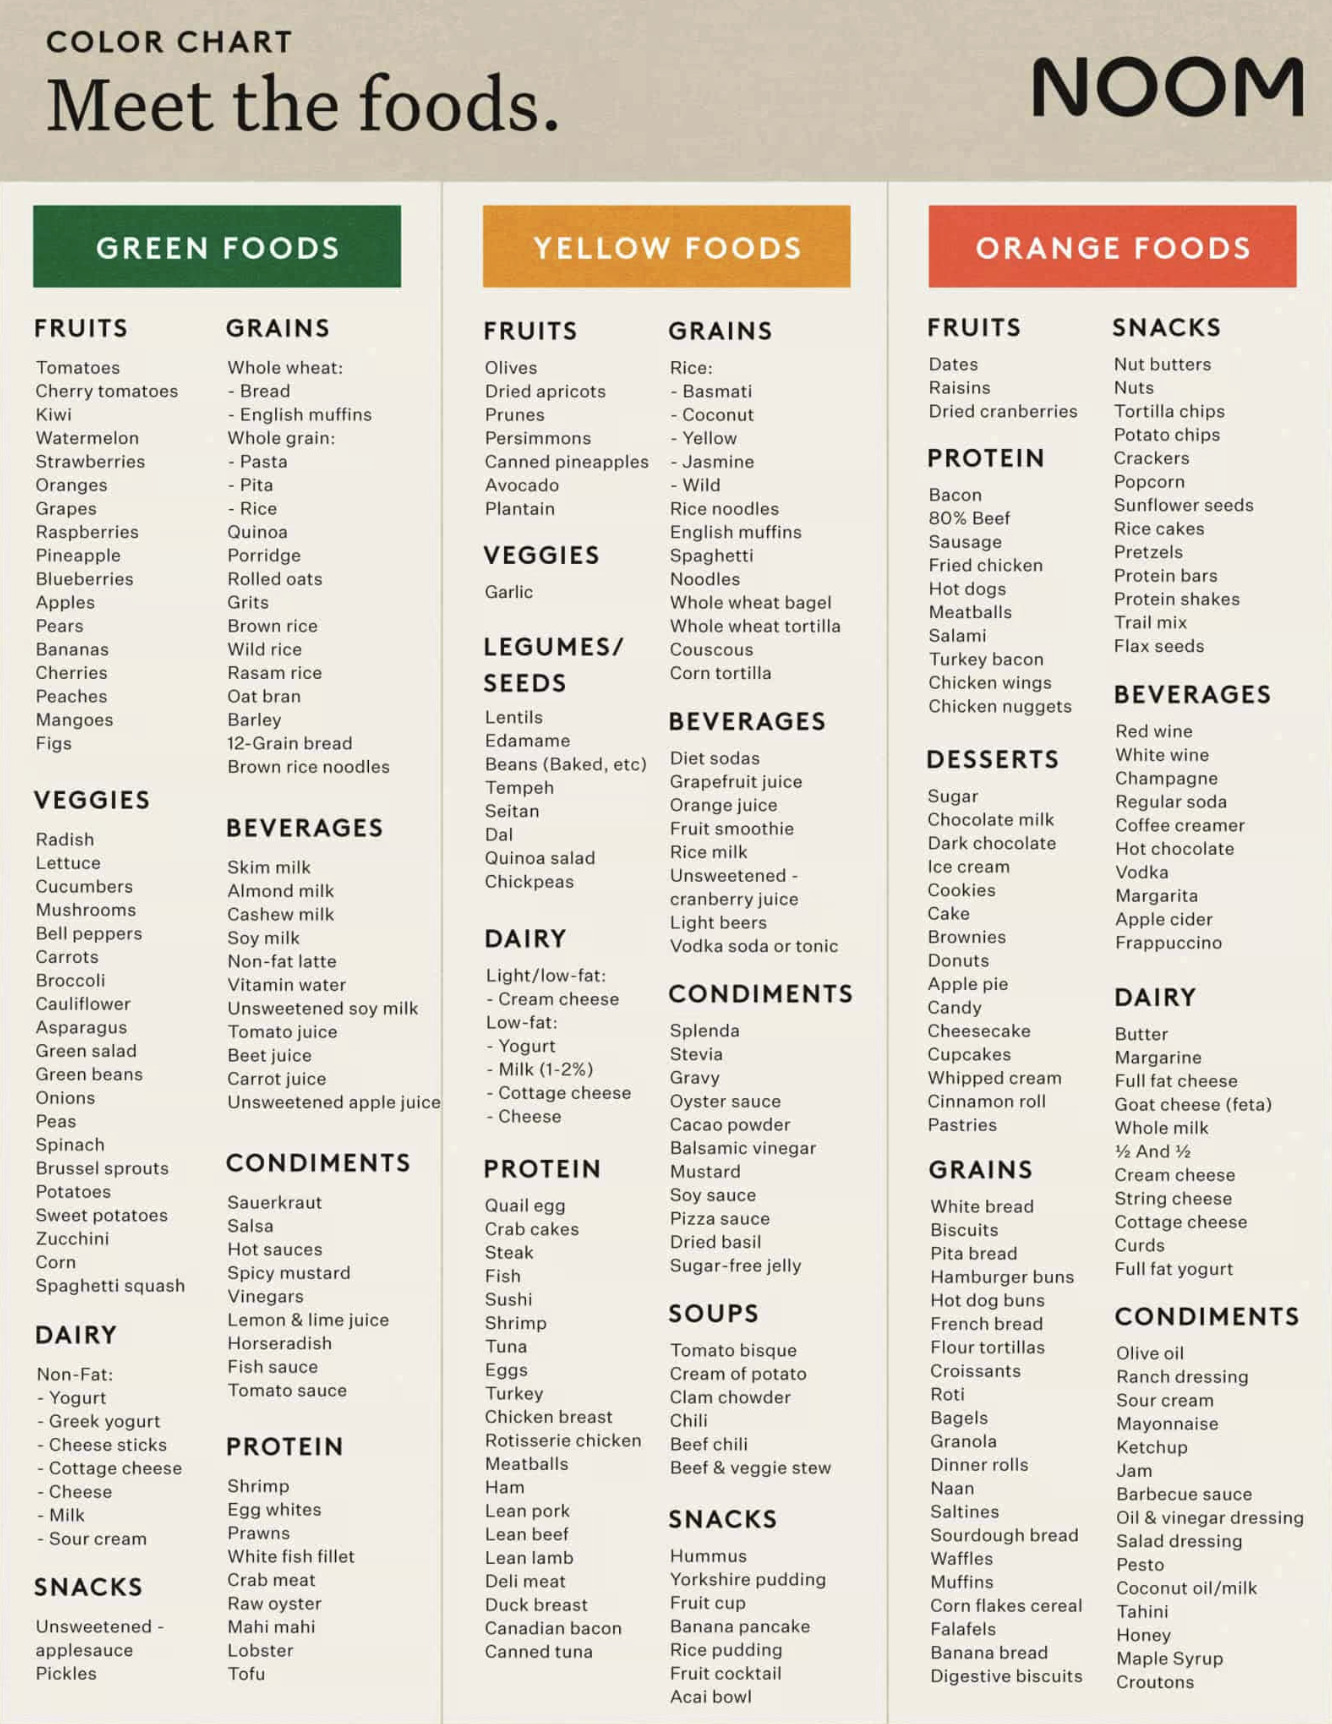 List of foods